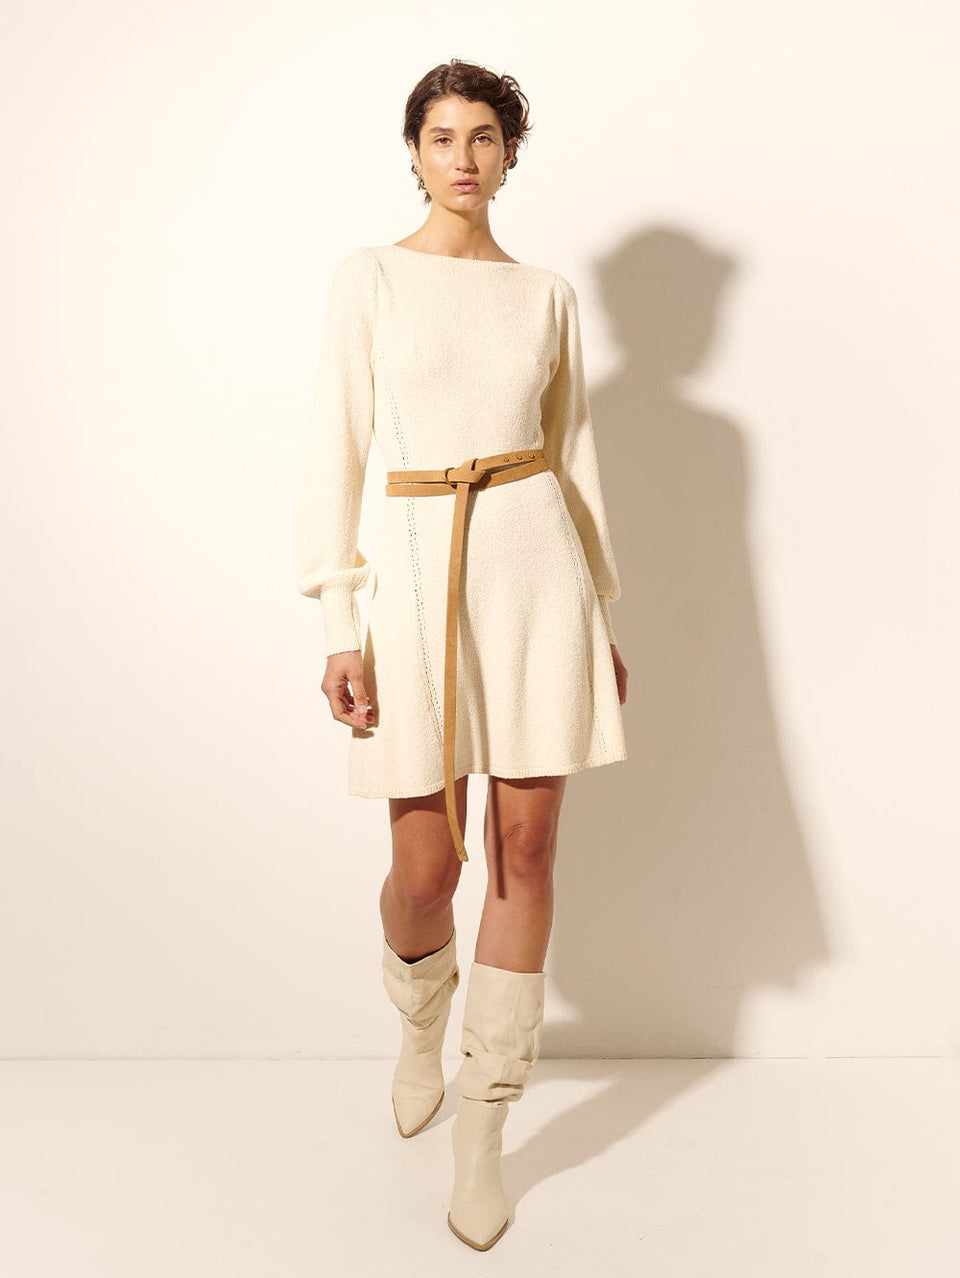 Cali Knit Mini Dress KIVARI | Model wears cream knit mini dress